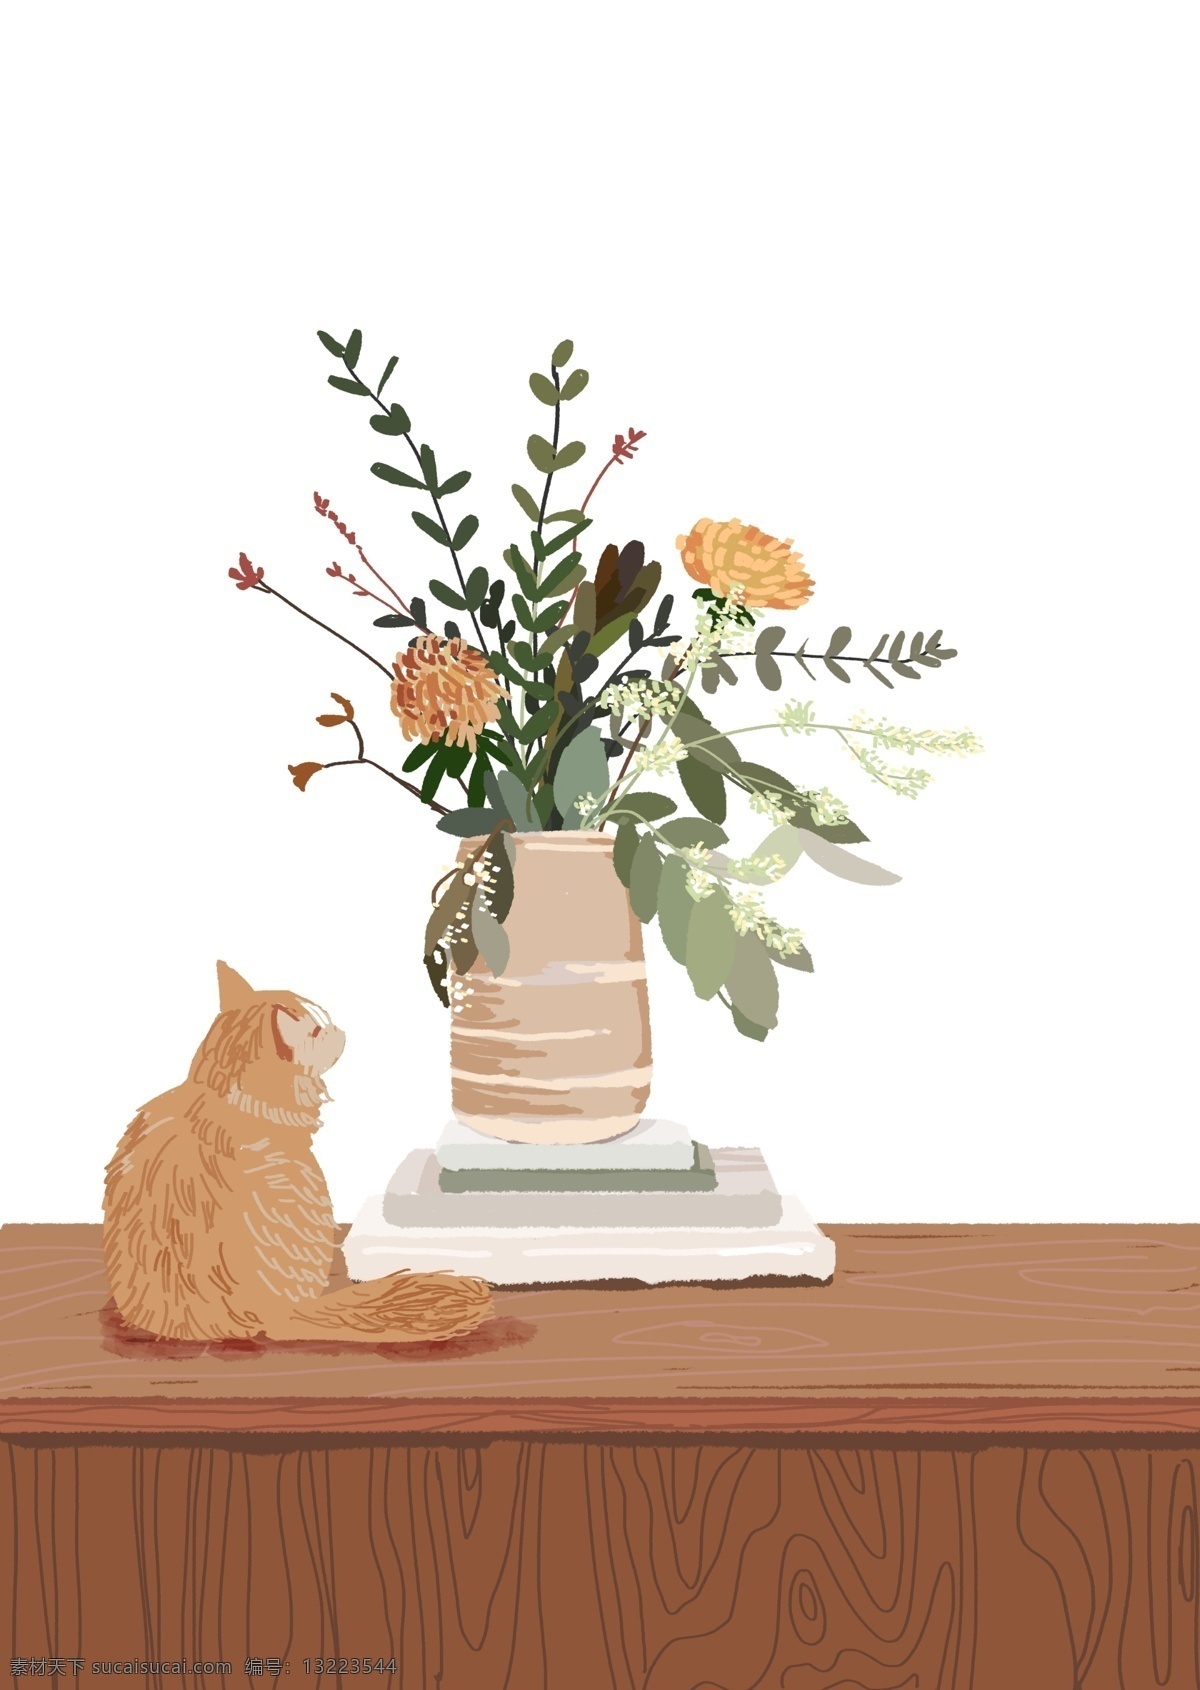 黄色 系 温暖 书桌 手绘 平涂 肌理 感 插图 花瓶 猫 橘猫 植物 叶子 肌理感 书本 花束